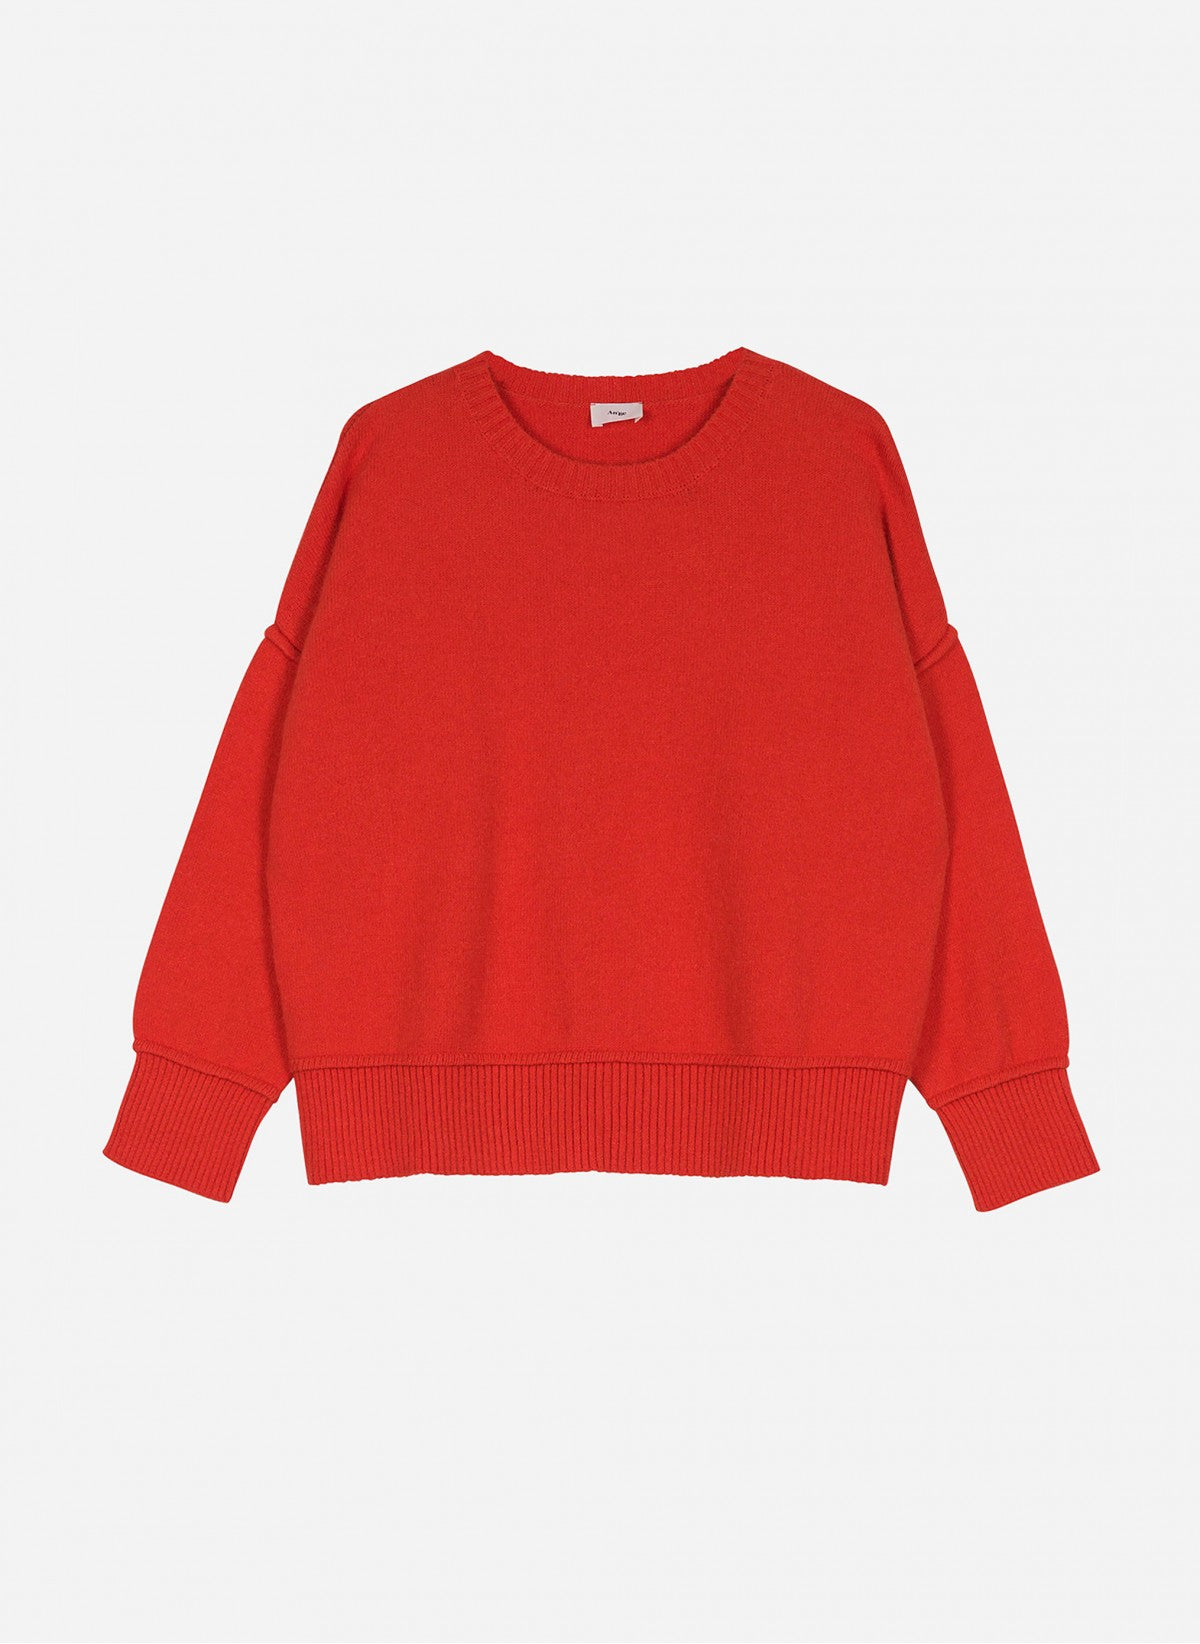 Poppy drop shoulder sweater